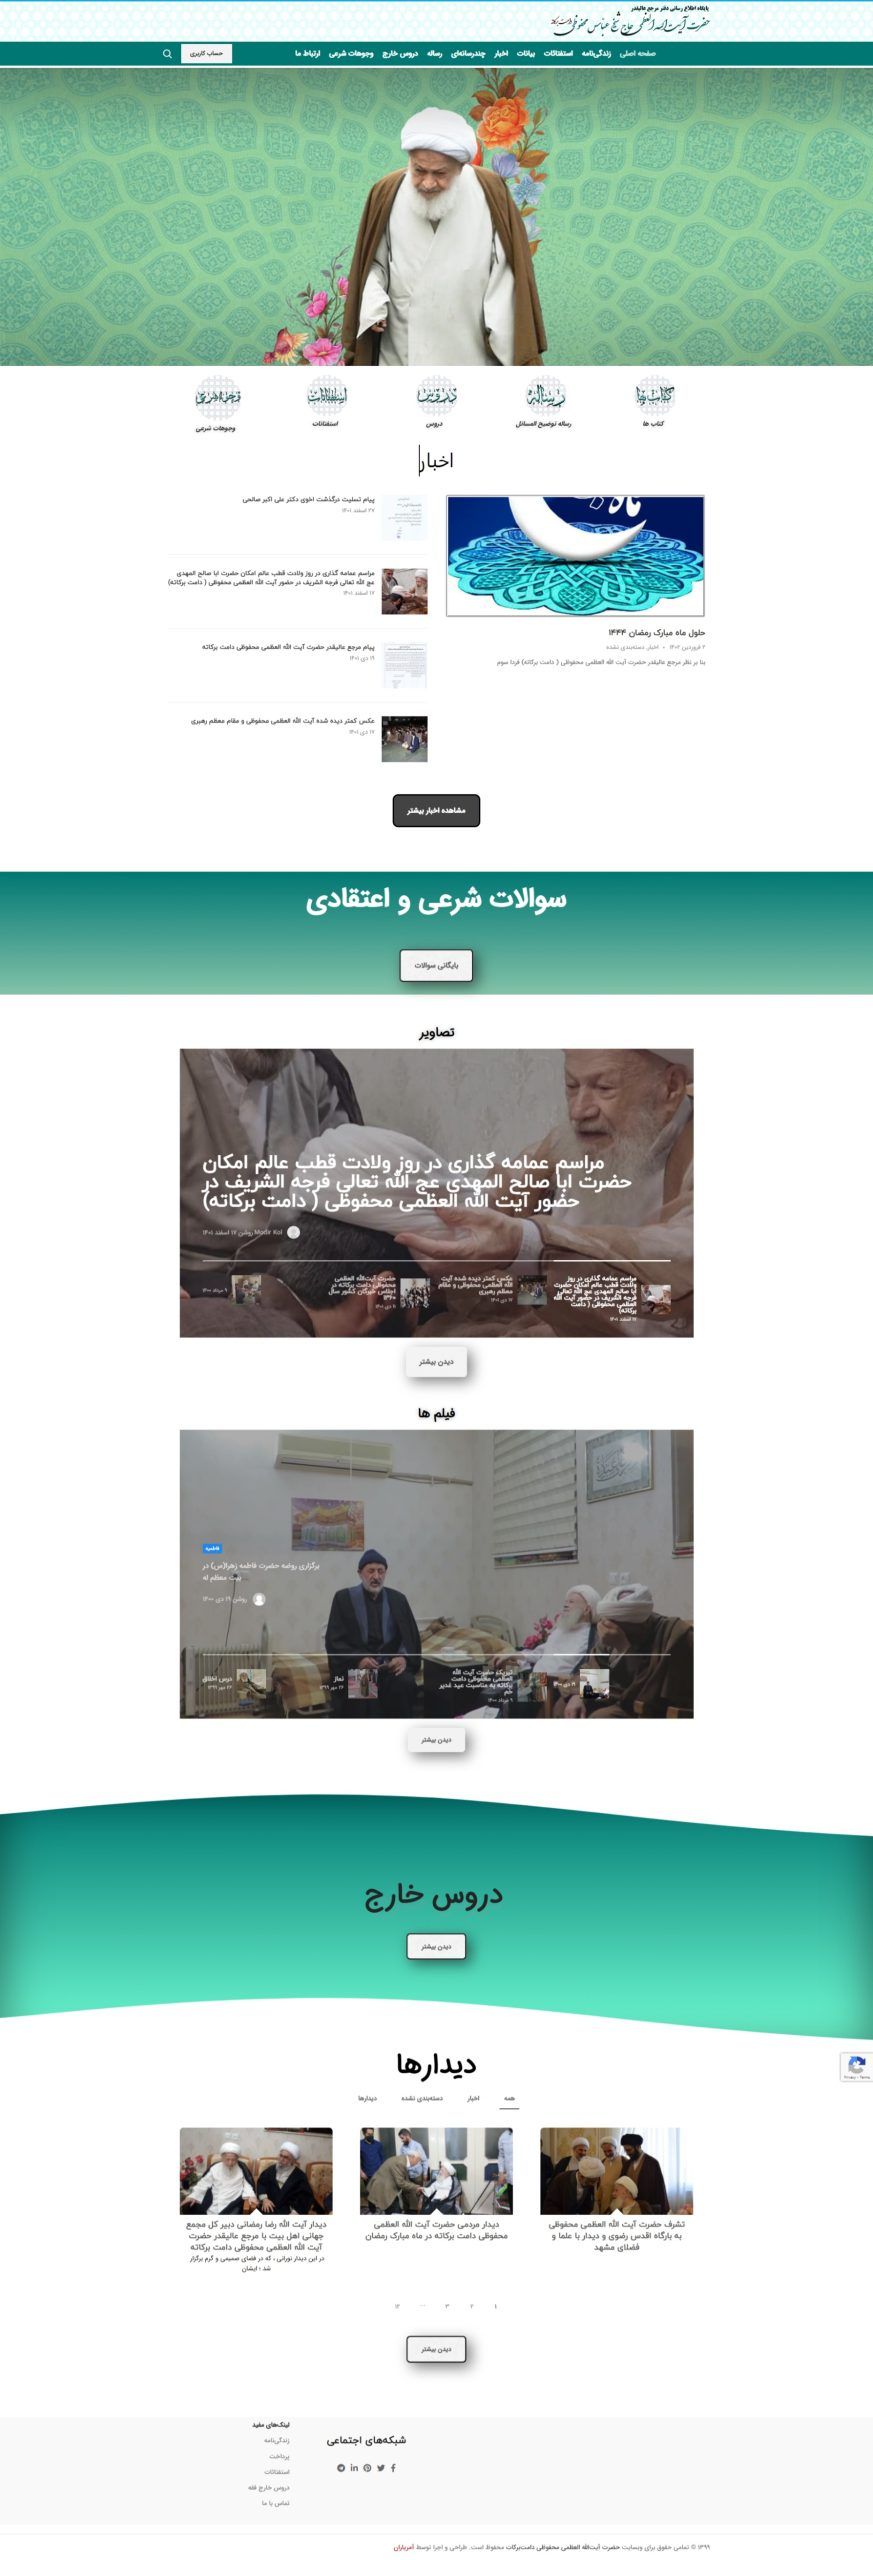 پشتیبانی وب سایت شخصی شیخ عباس محفوظی | طراحی وب سایت, نمونه کار